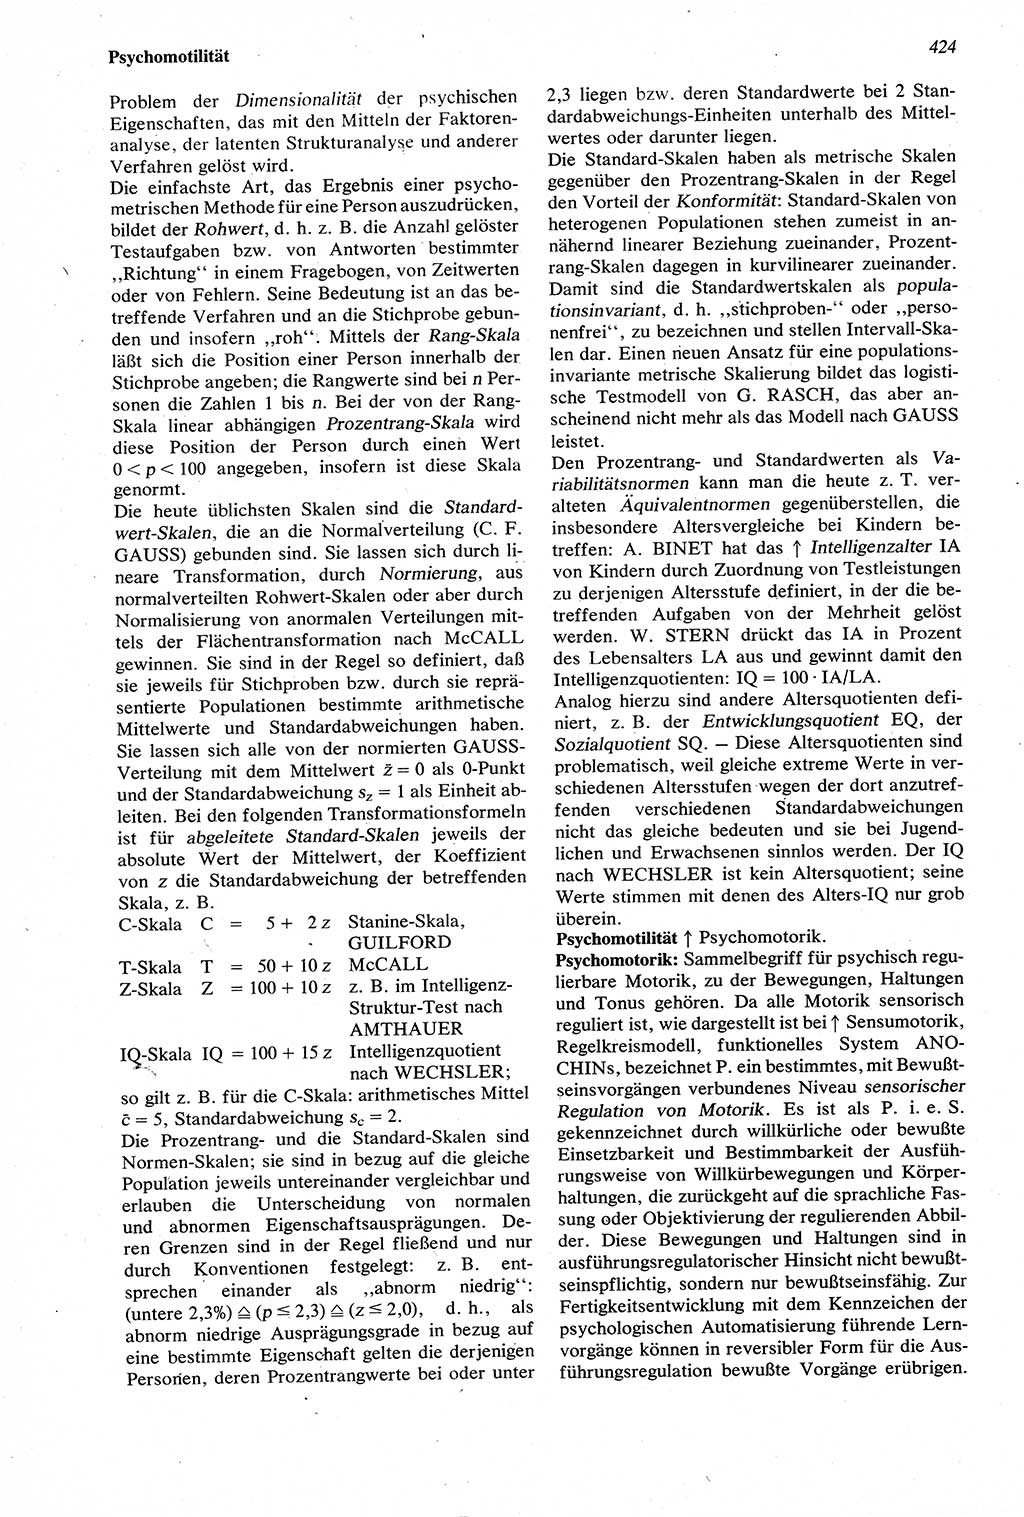 Wörterbuch der Psychologie [Deutsche Demokratische Republik (DDR)] 1976, Seite 424 (Wb. Psych. DDR 1976, S. 424)